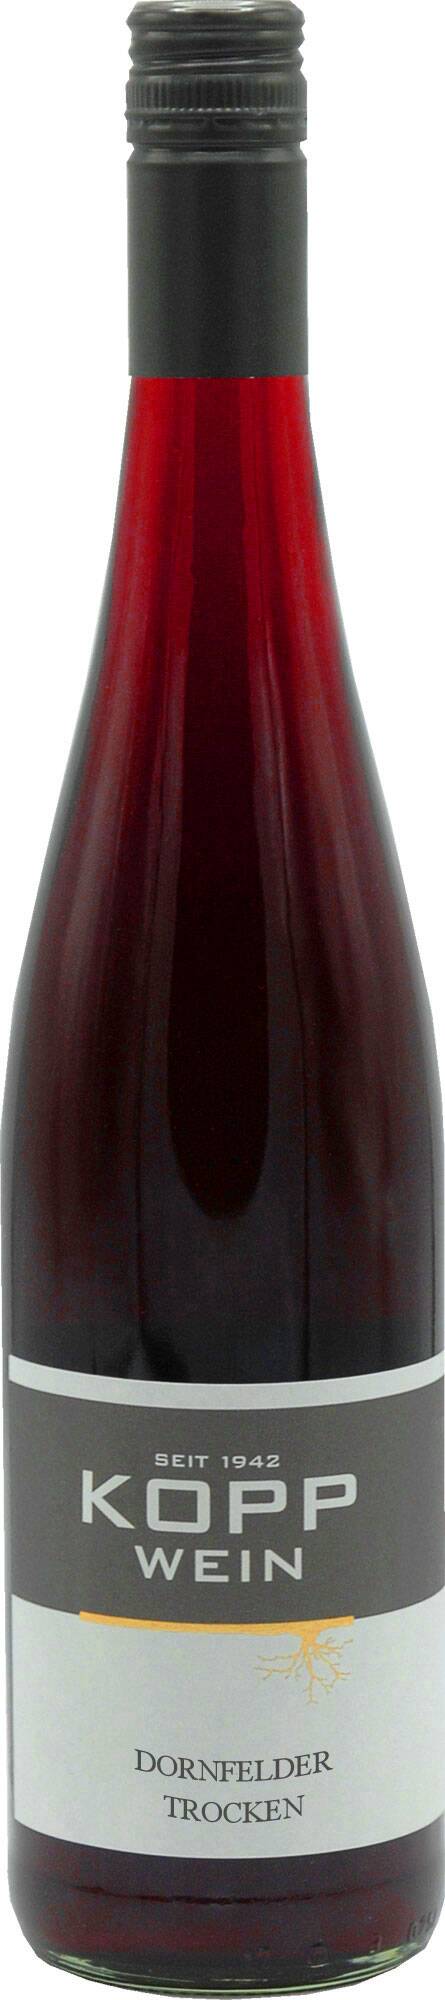 Gutsabfüllung Weingut Kopp Pfalz 22er Dornfelder trocken Wein (rot)